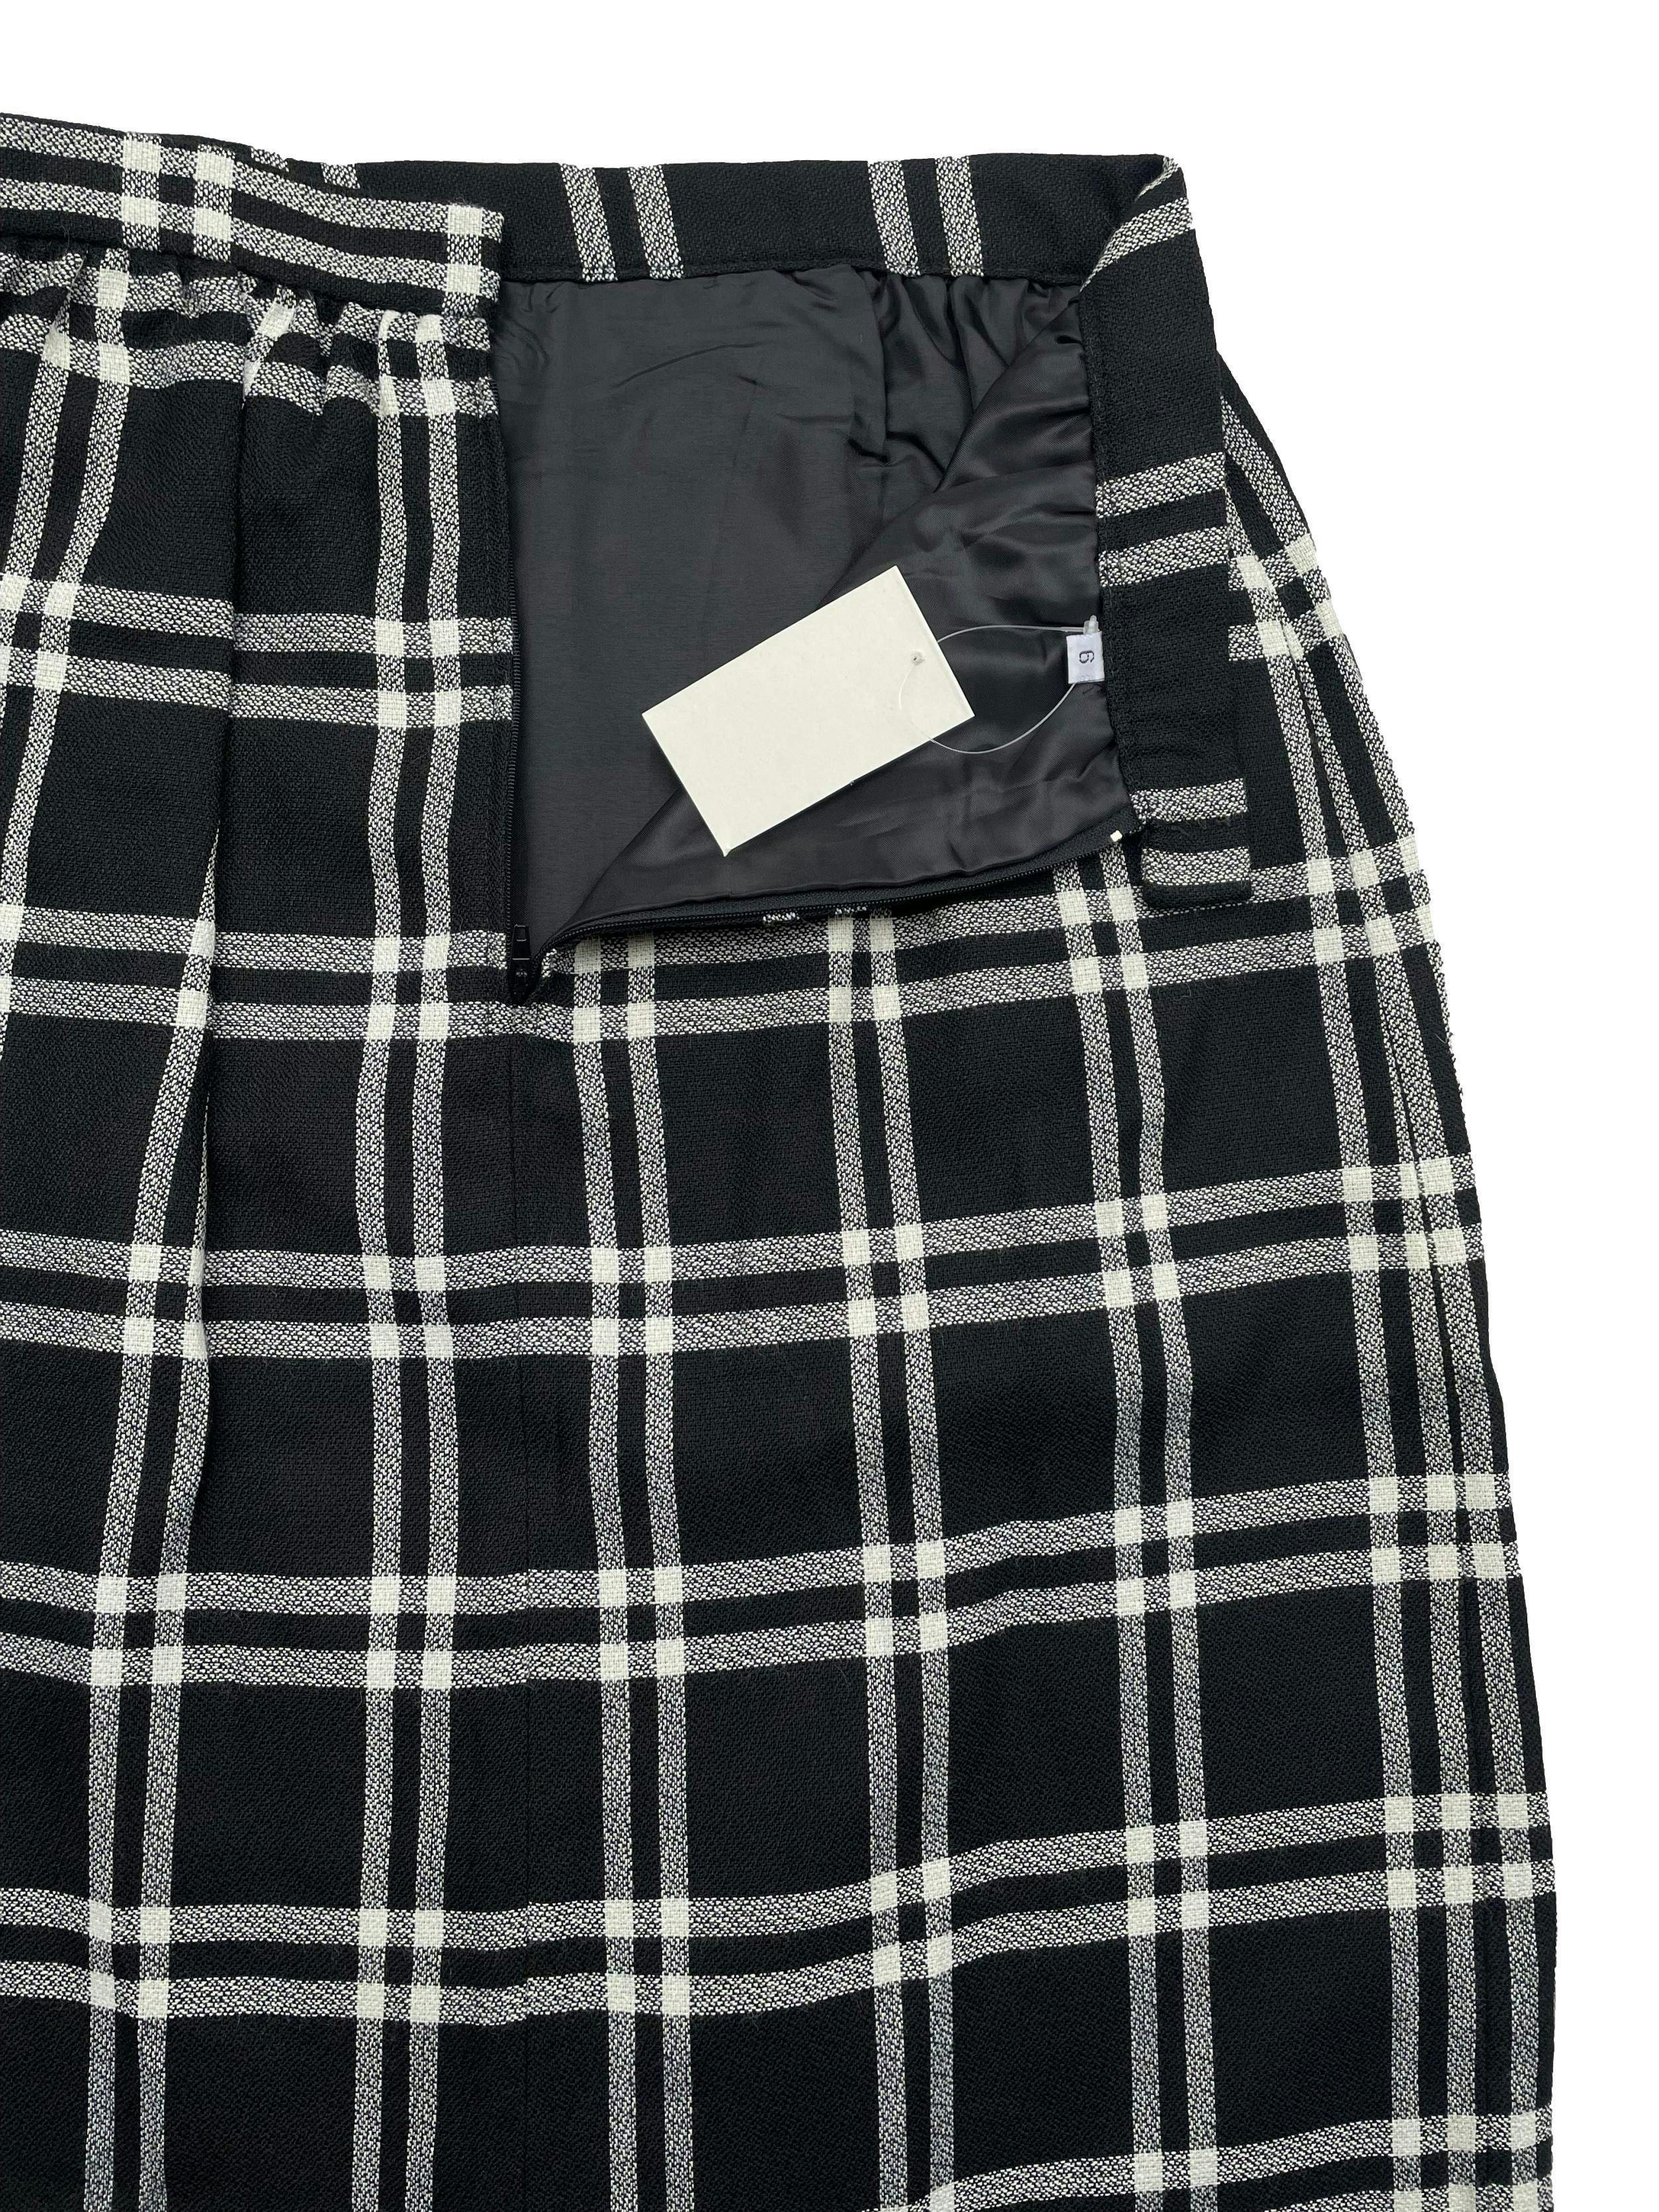 Falda midi vintage, estampado escoces en blanco y negro , pliegue central y cierre posterior. Cintura 66cm, Largo 69cm.